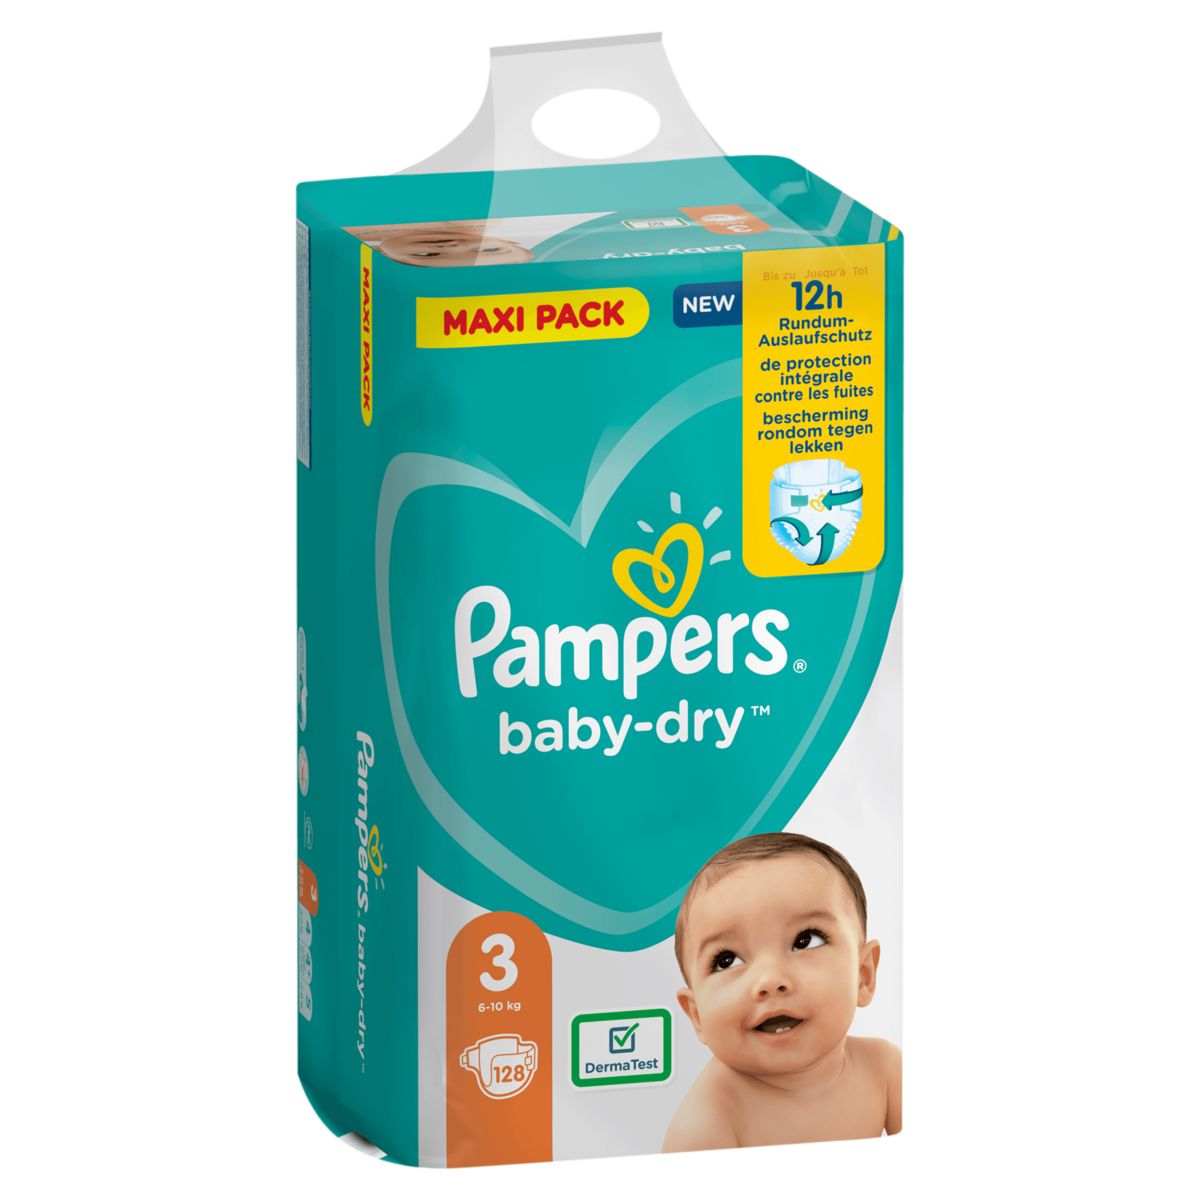 Snikken boog Derbevilletest Pampers Baby-Dry Maat 3, 128 Luiers, Tot 12 Uur Bescherming, 6-10kg |  Carrefour Site